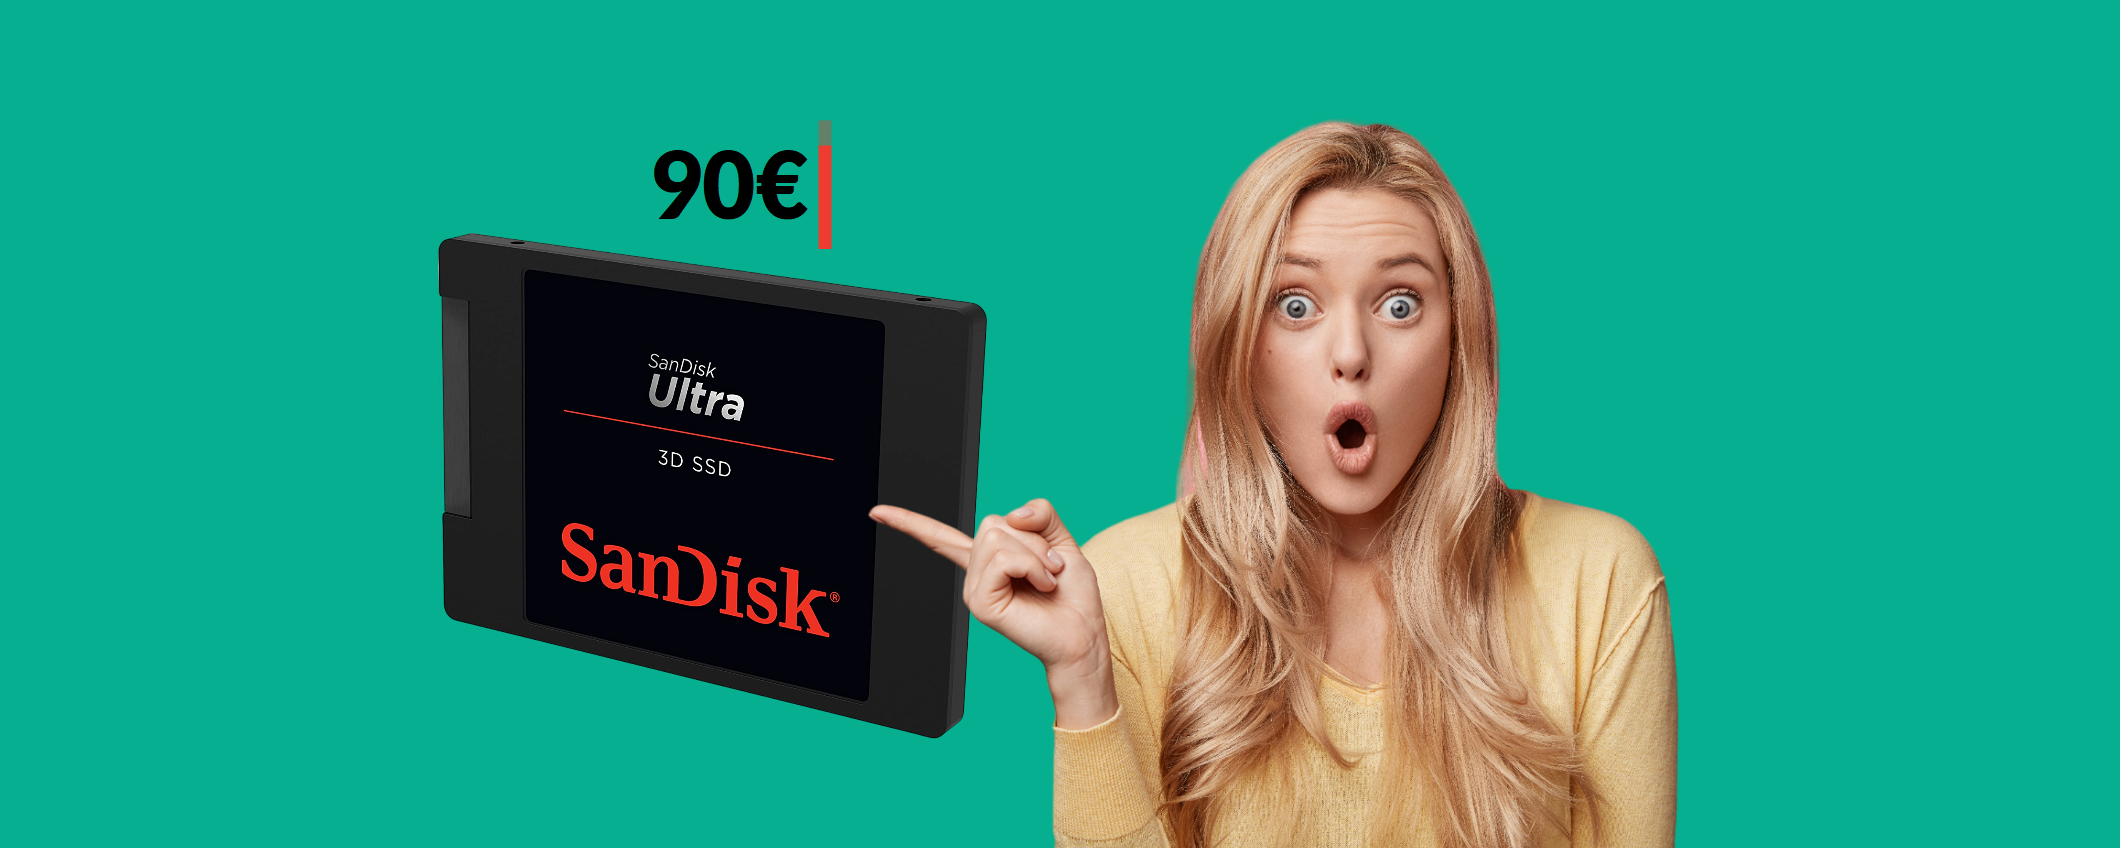 SSD SanDisk 1TB: il MIGLIORE che puoi acquistare a soli 90€